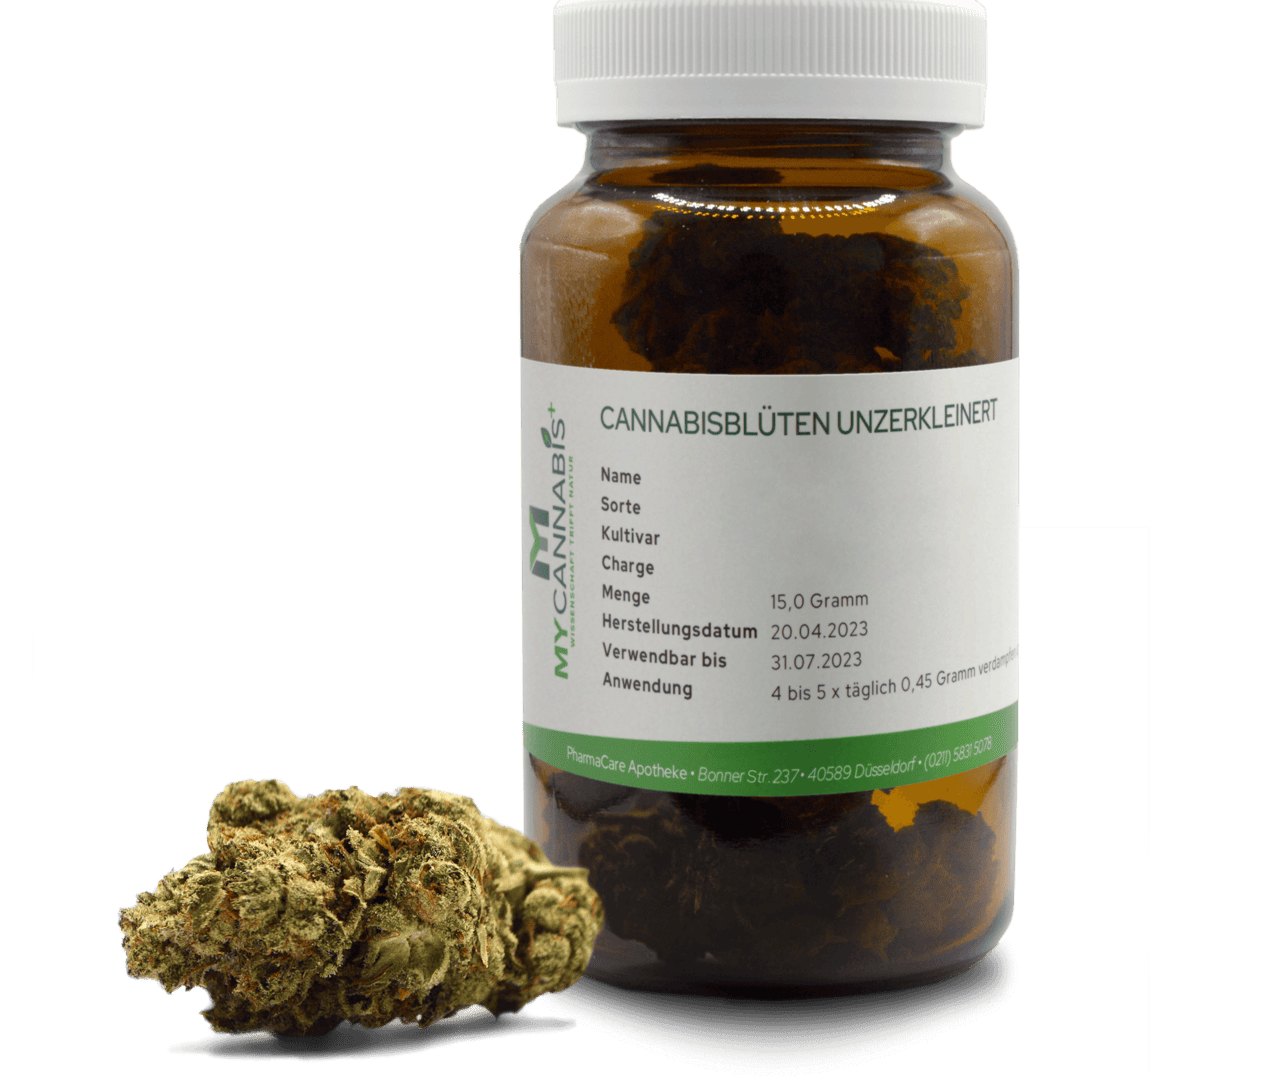 THC- und CBD-Gehalt in der Cannabisblüte